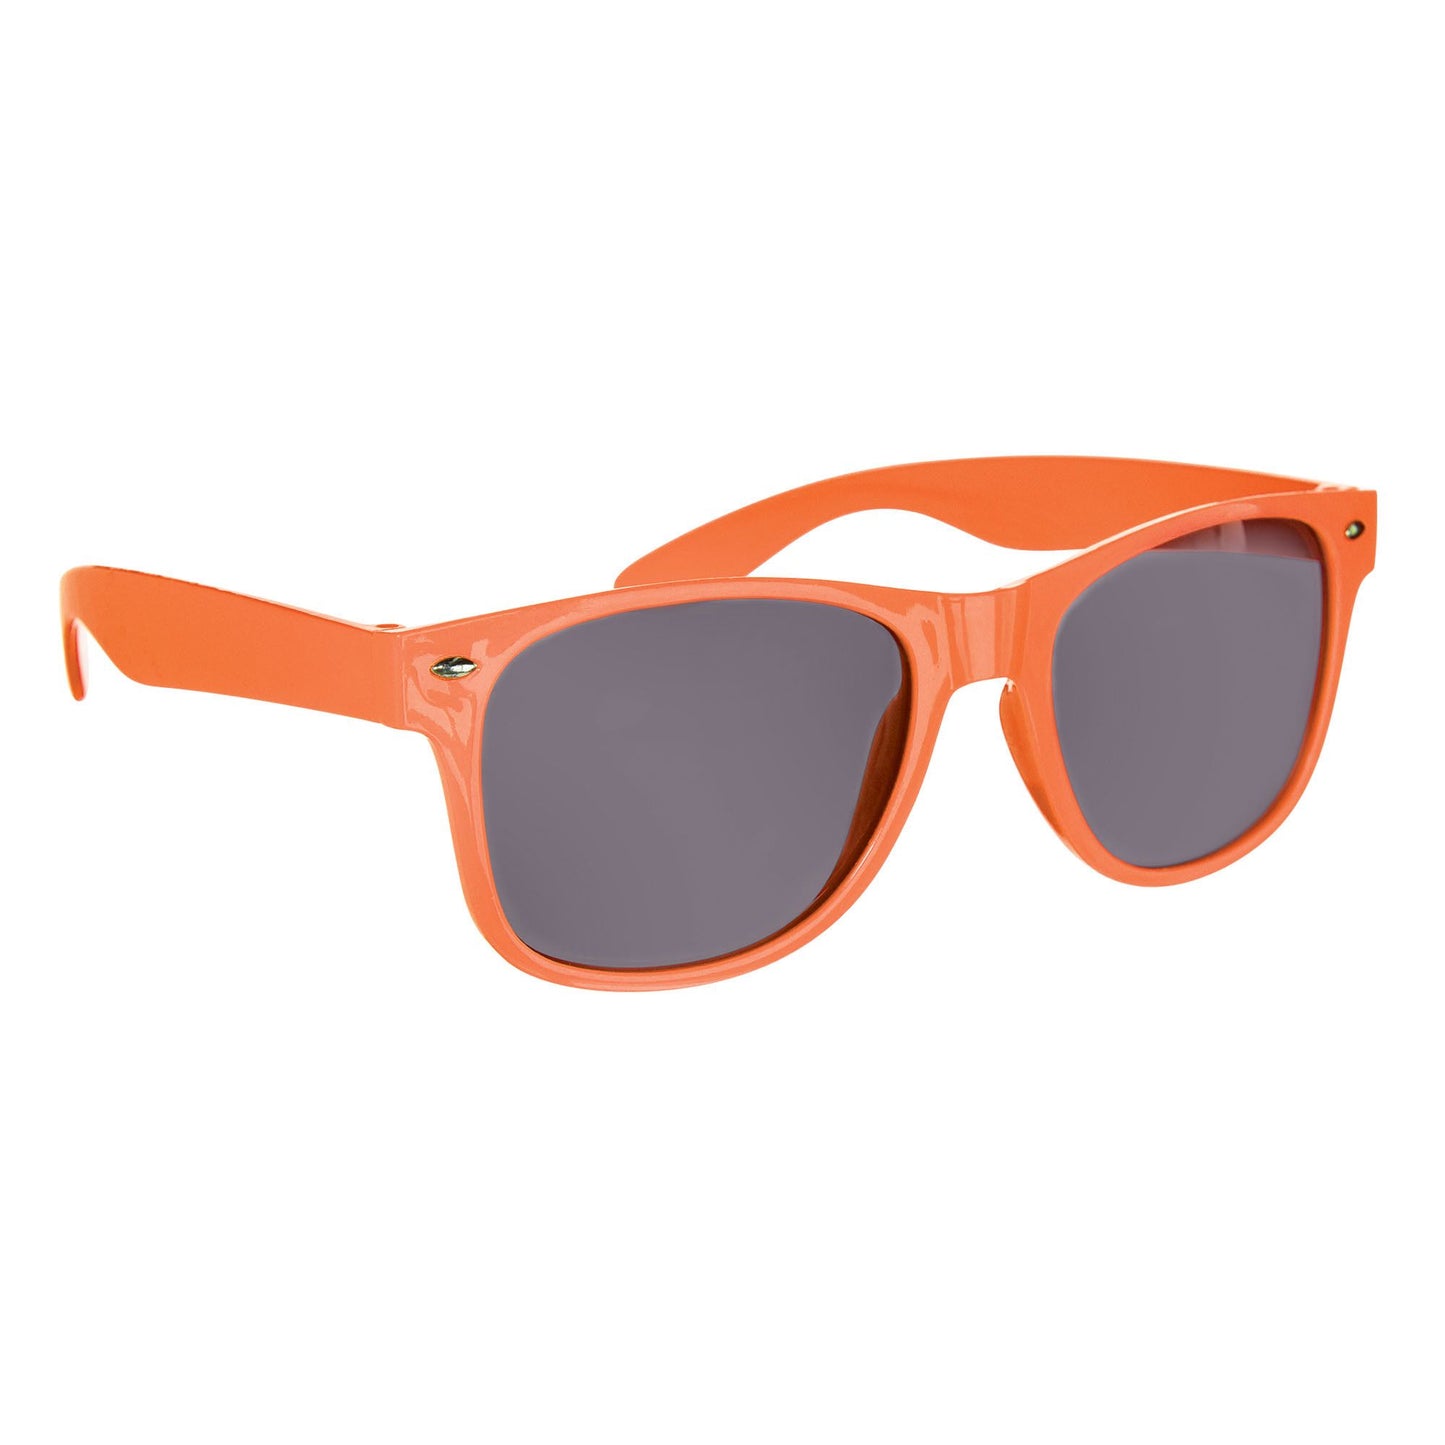 Glasses Darl Lens - Orange